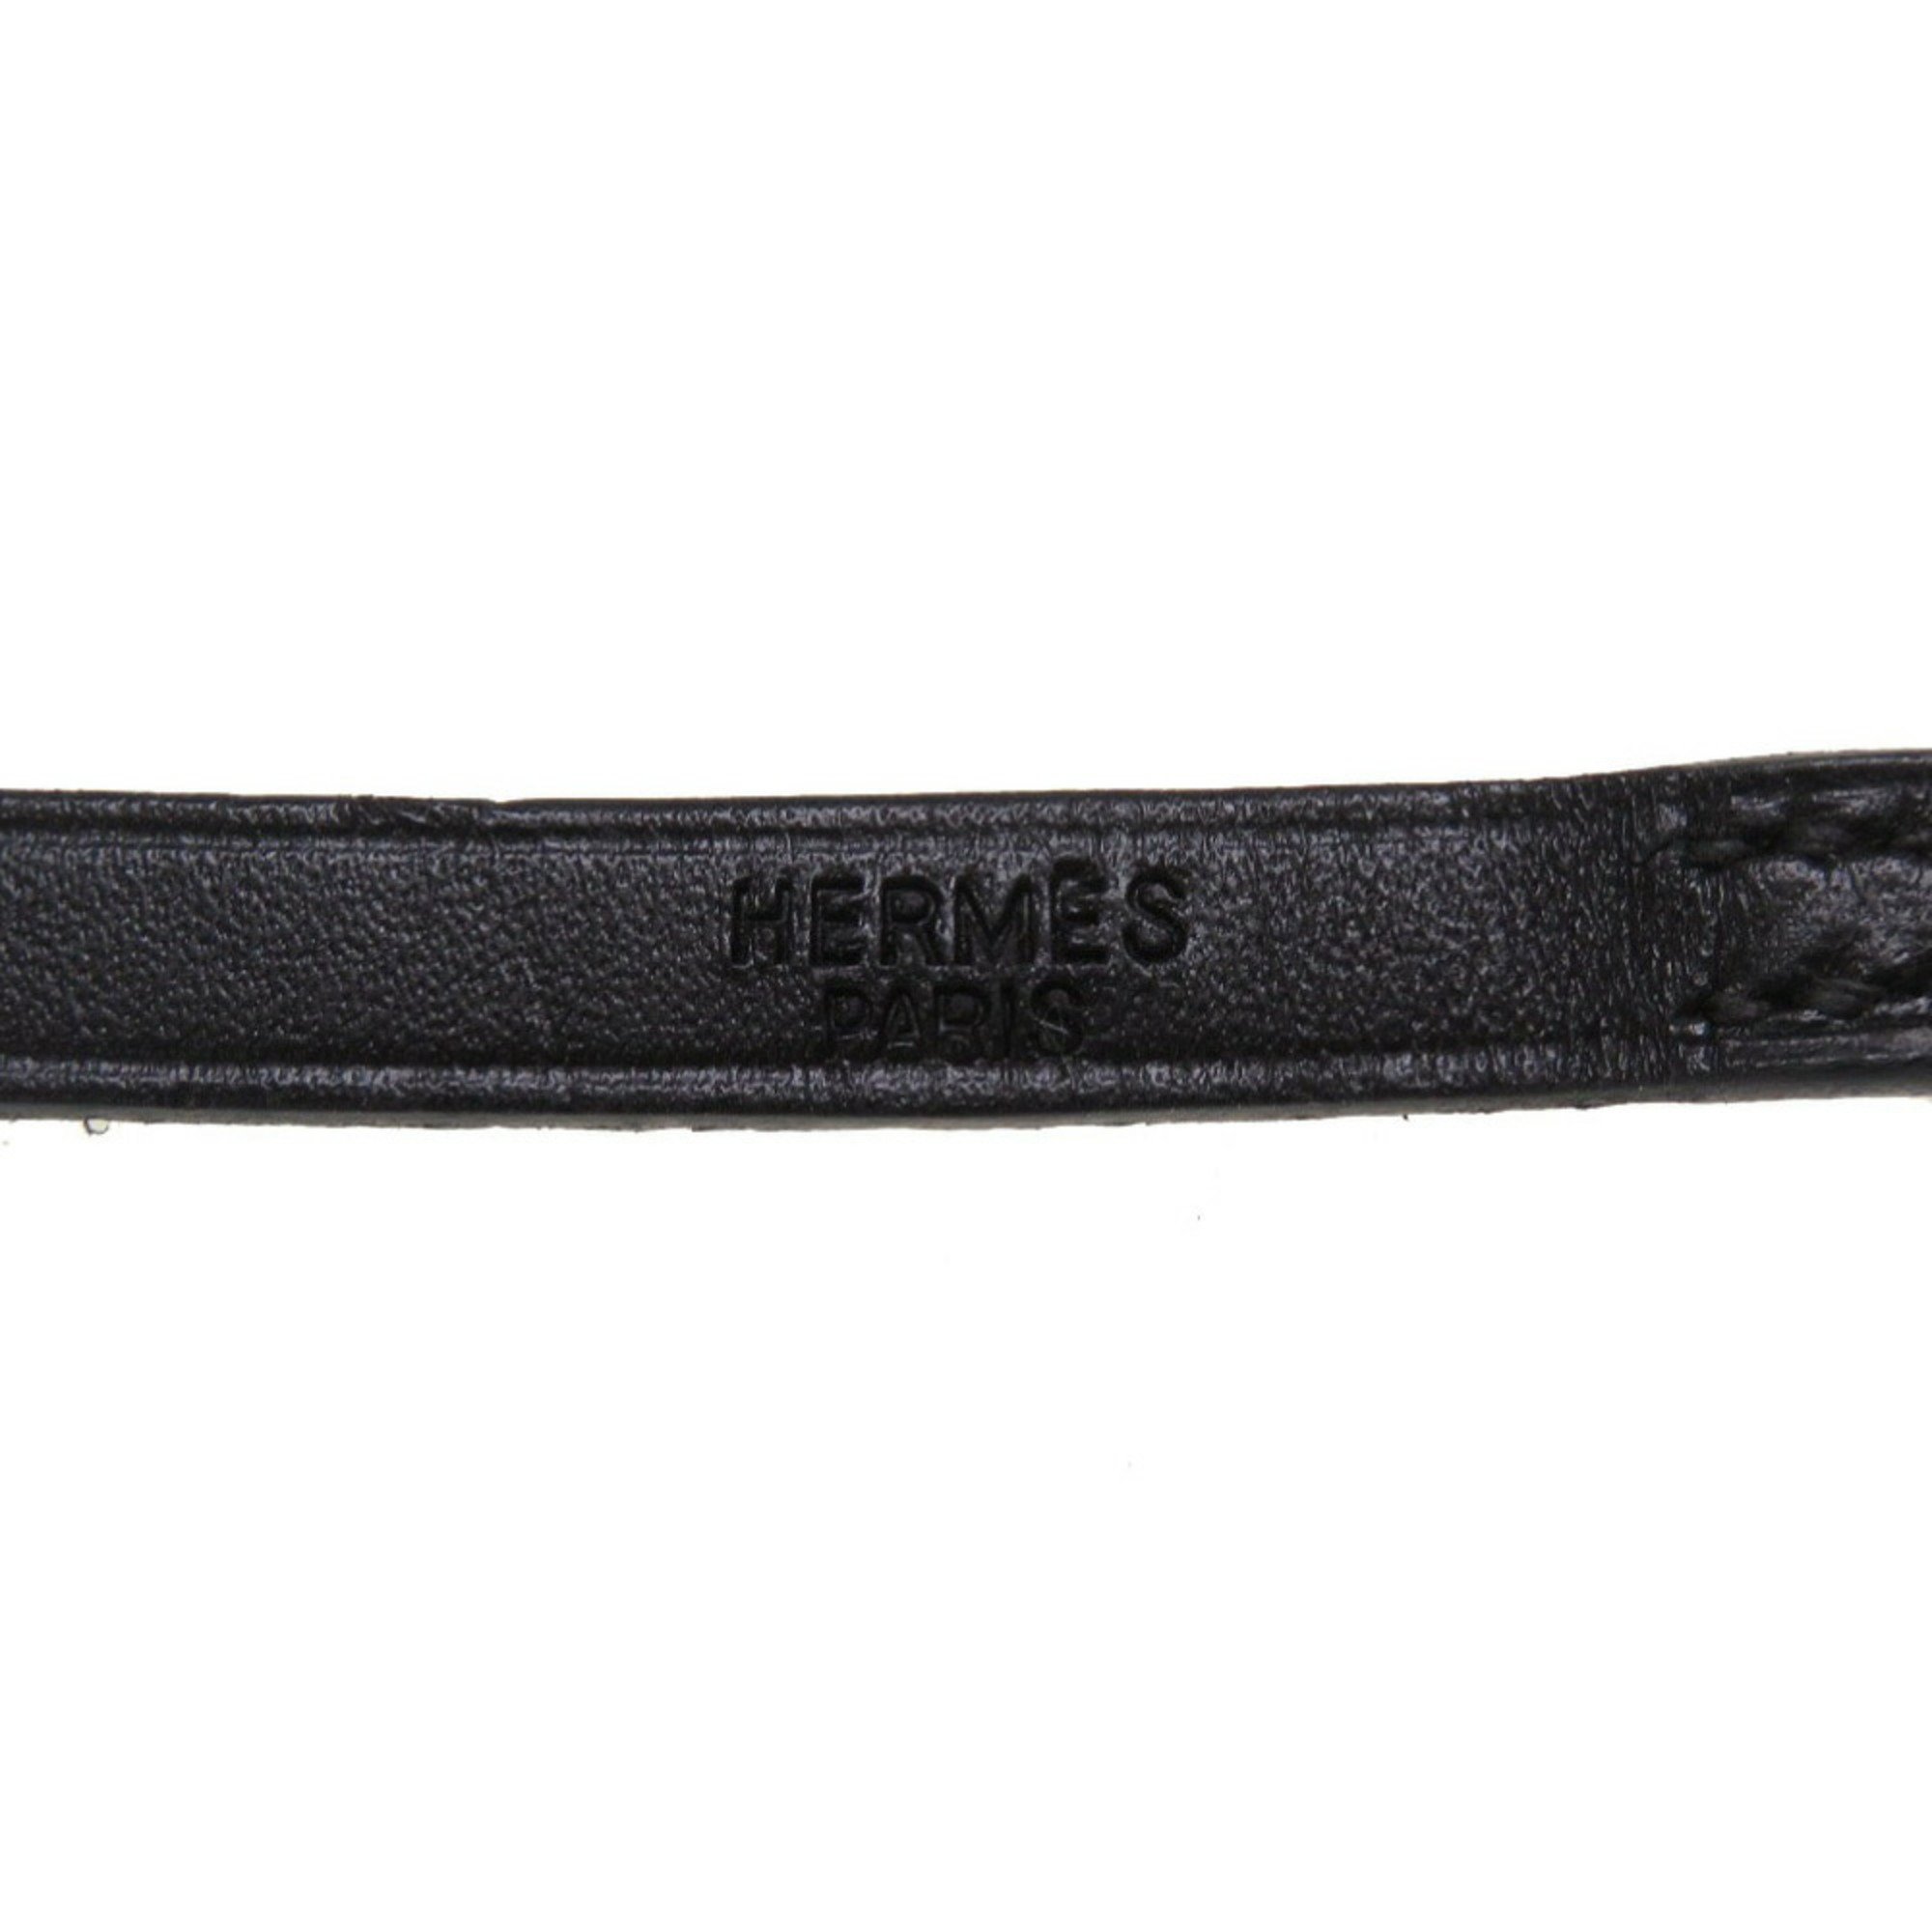 Hermes Api 3 leather black □E engraved bracelet